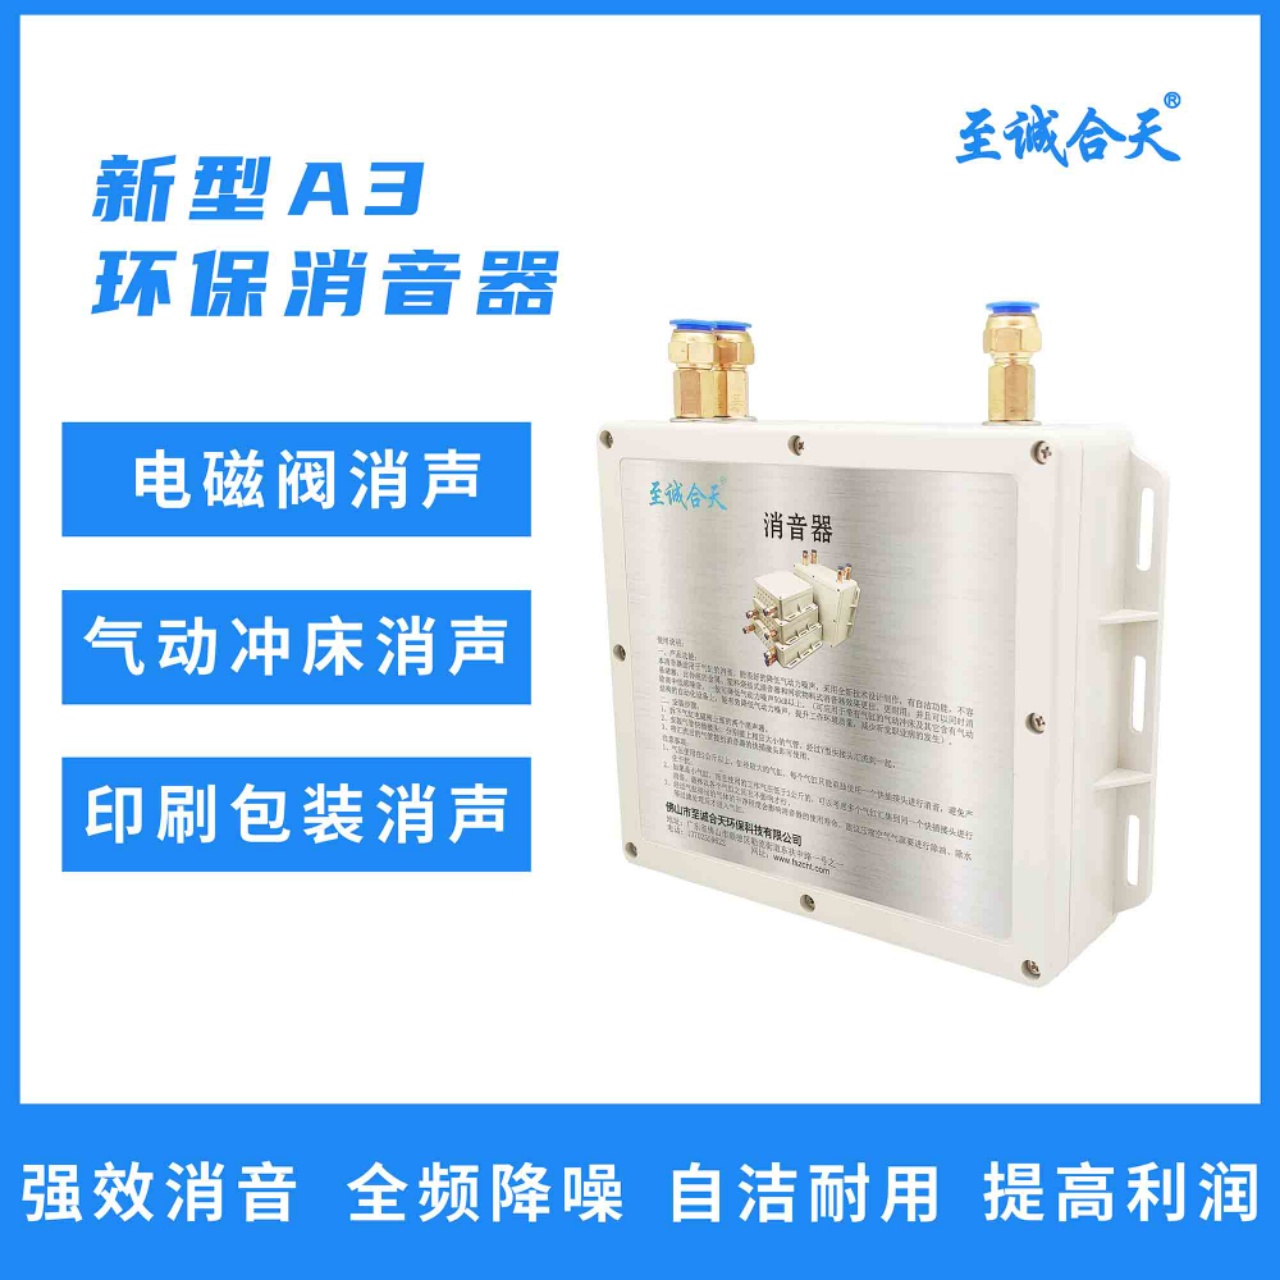 供应立式画胶机消声器 除氧器排汽消声器 自动压盖机消声器